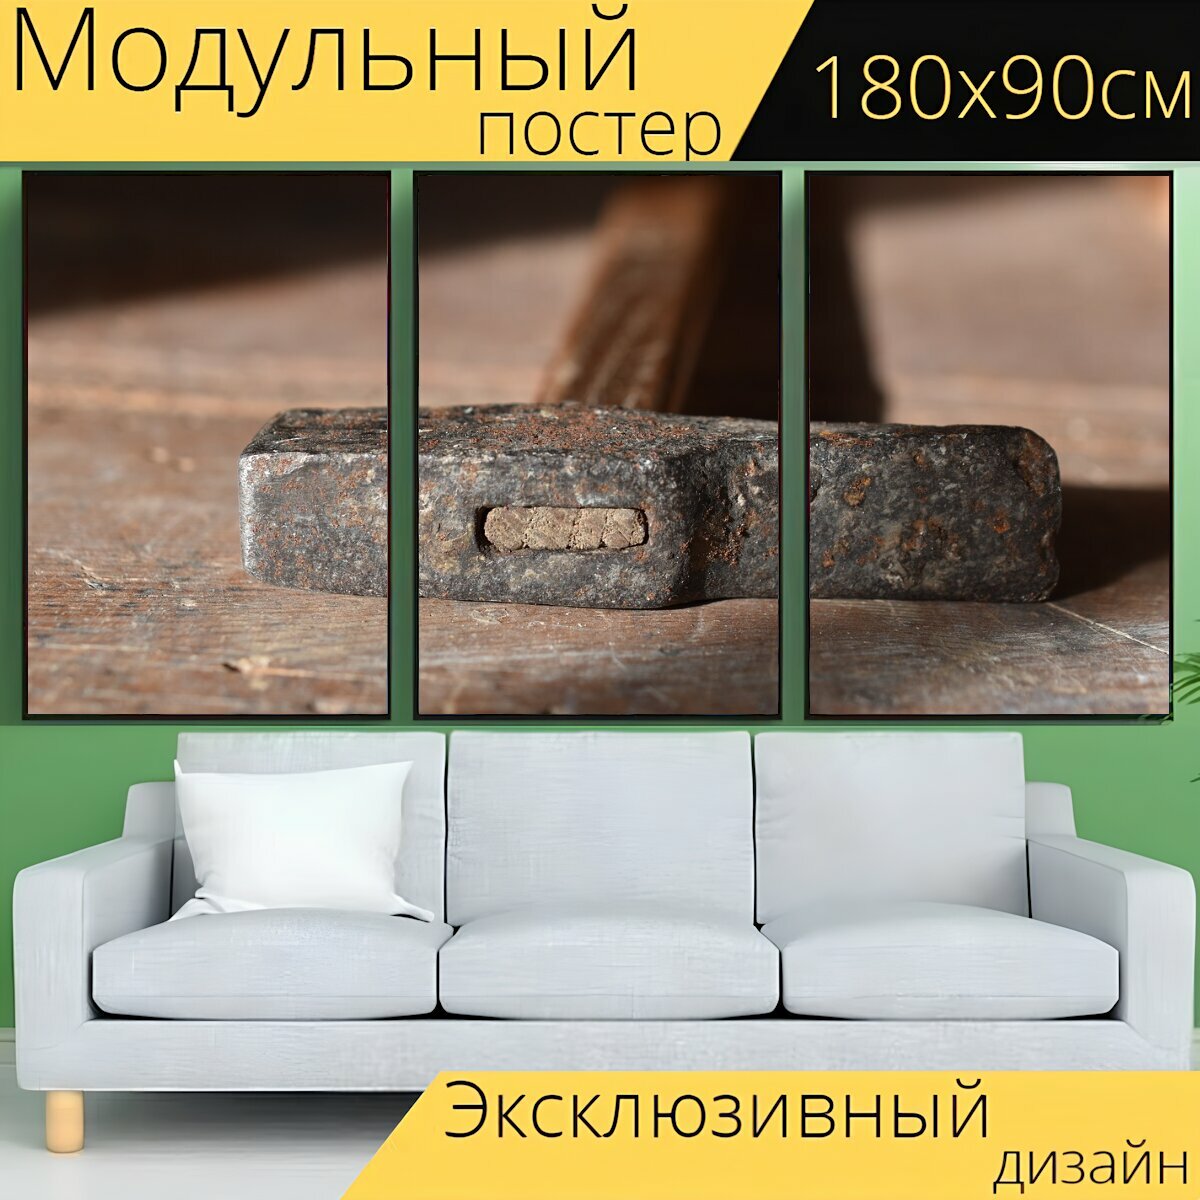 Модульный постер "Молоток, орудие труда, плотник" 180 x 90 см. для интерьера